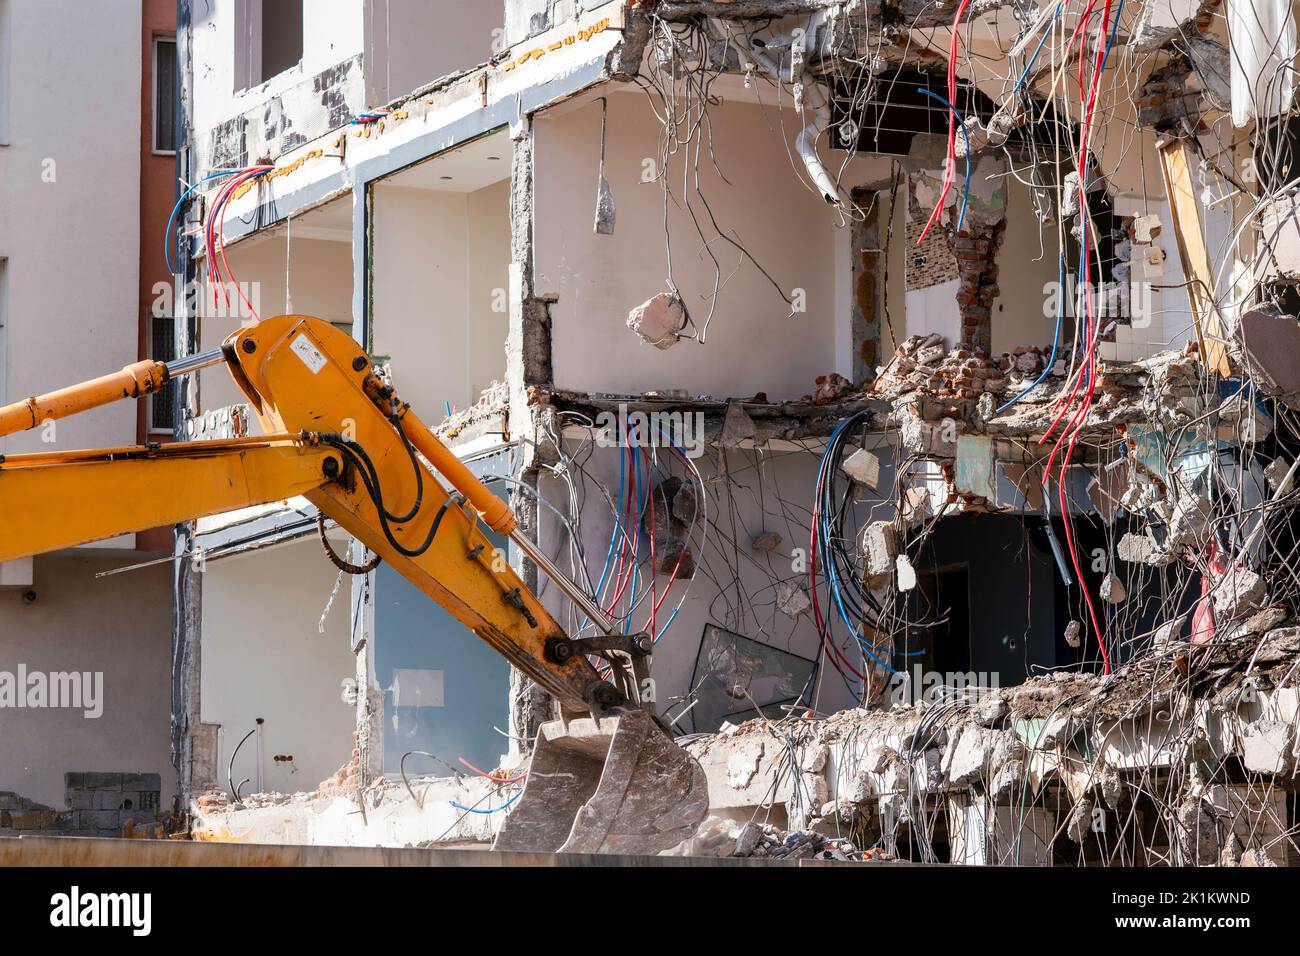 Une lourde machine de travail industriel, l'excaveur détruit un vieux bâtiment abandonné . Photo de haute qualité Banque D'Images